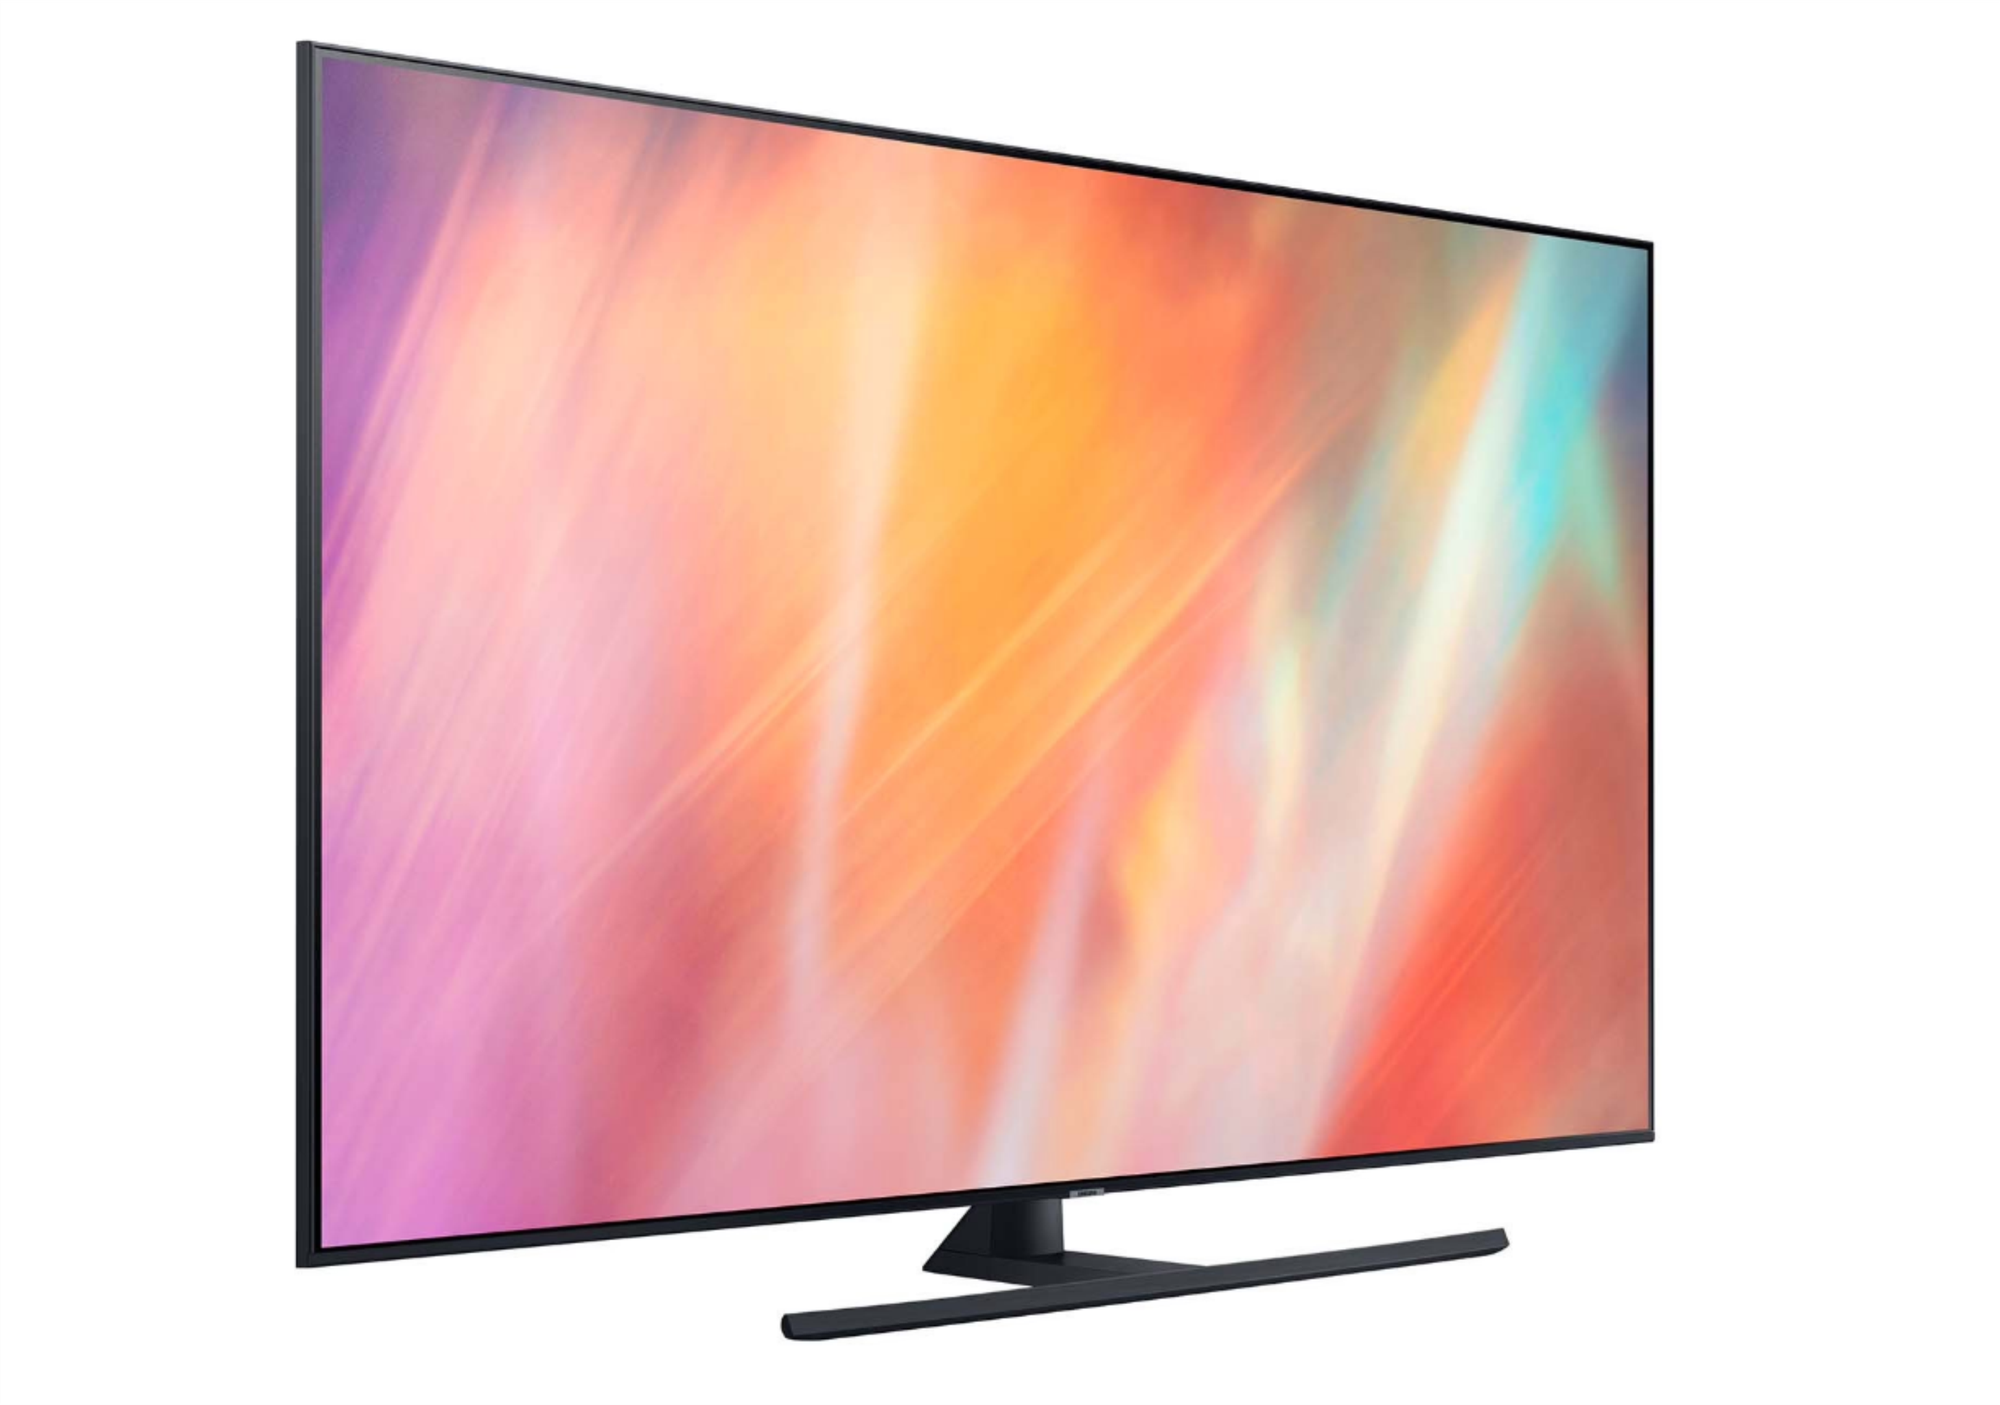 75" Телевизор Samsung UE75AU7500U 2021 LED, HDR, titan gray